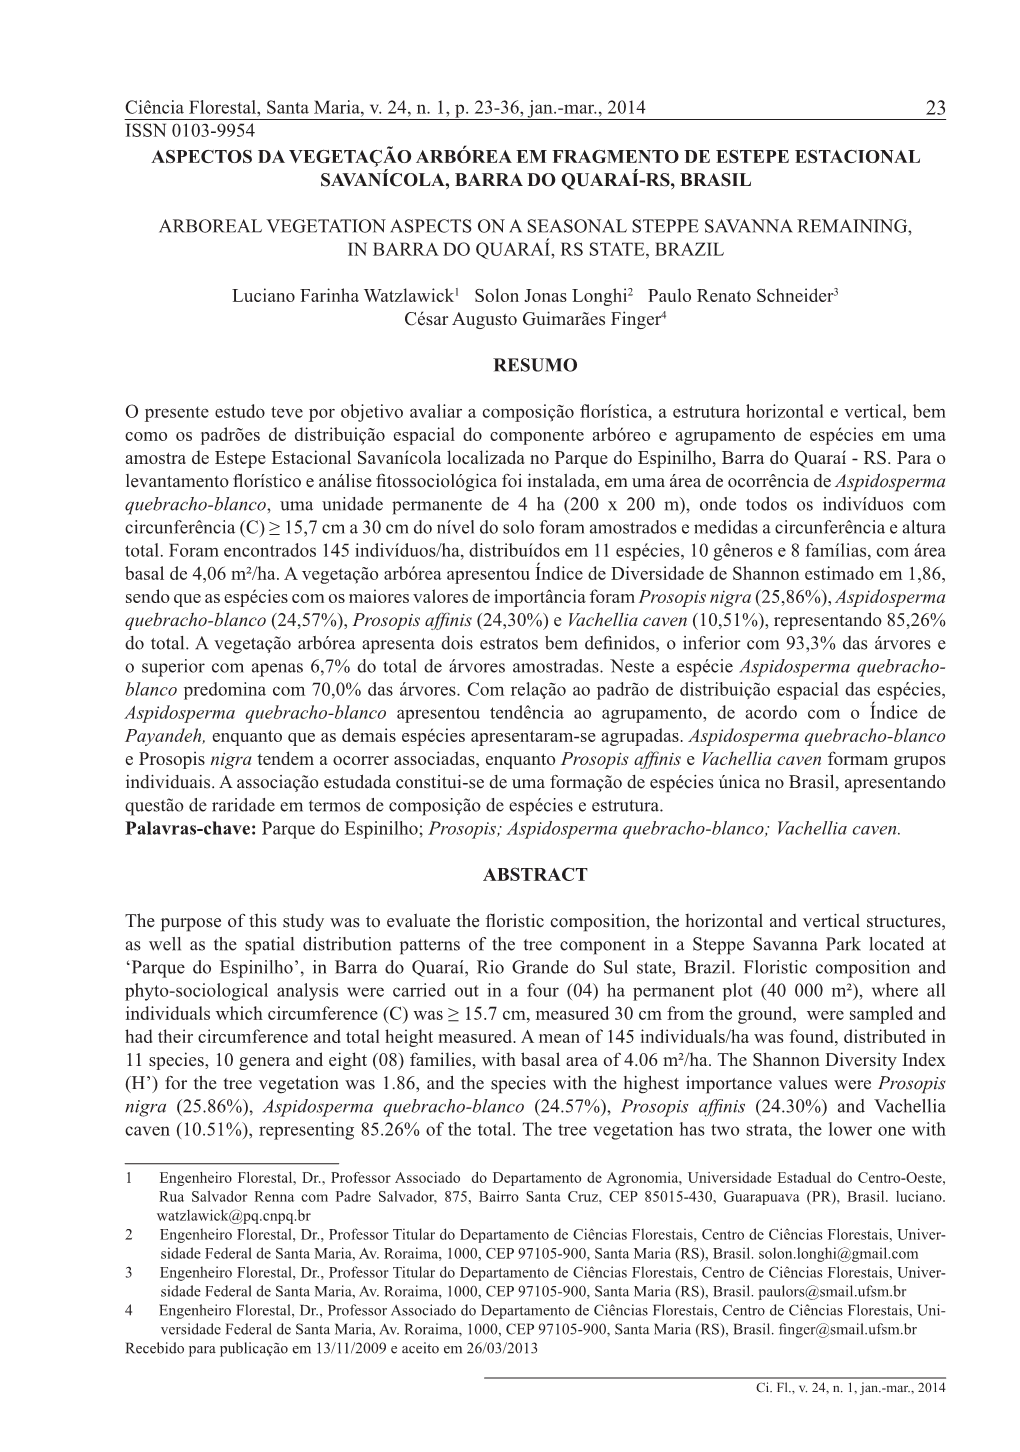 Ciência Florestal, Santa Maria, V. 24, N. 1, P. 23-36, Jan